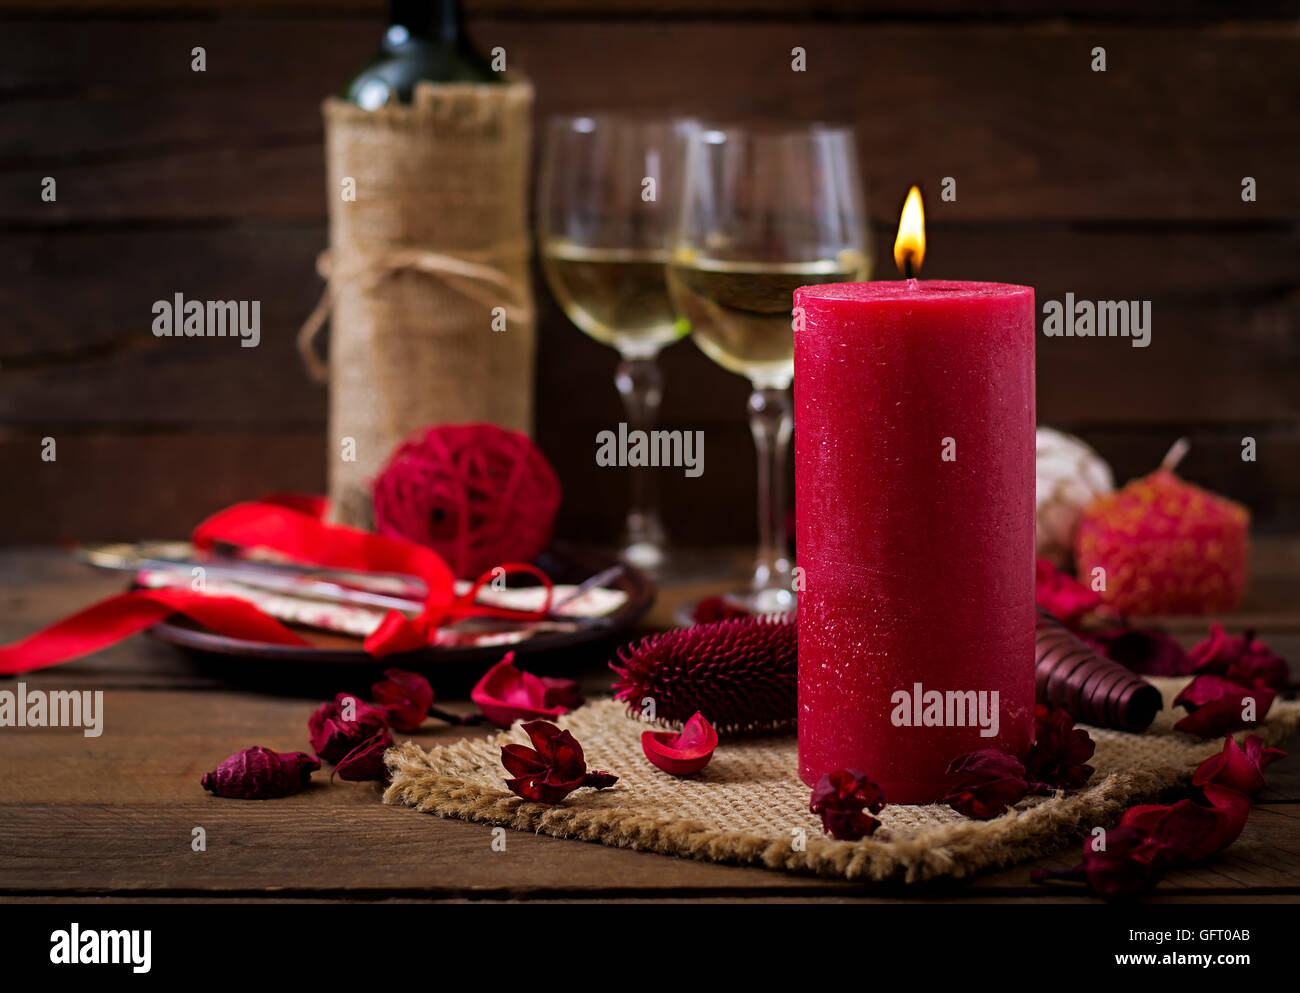 Candele romantiche immagini e fotografie stock ad alta risoluzione - Alamy